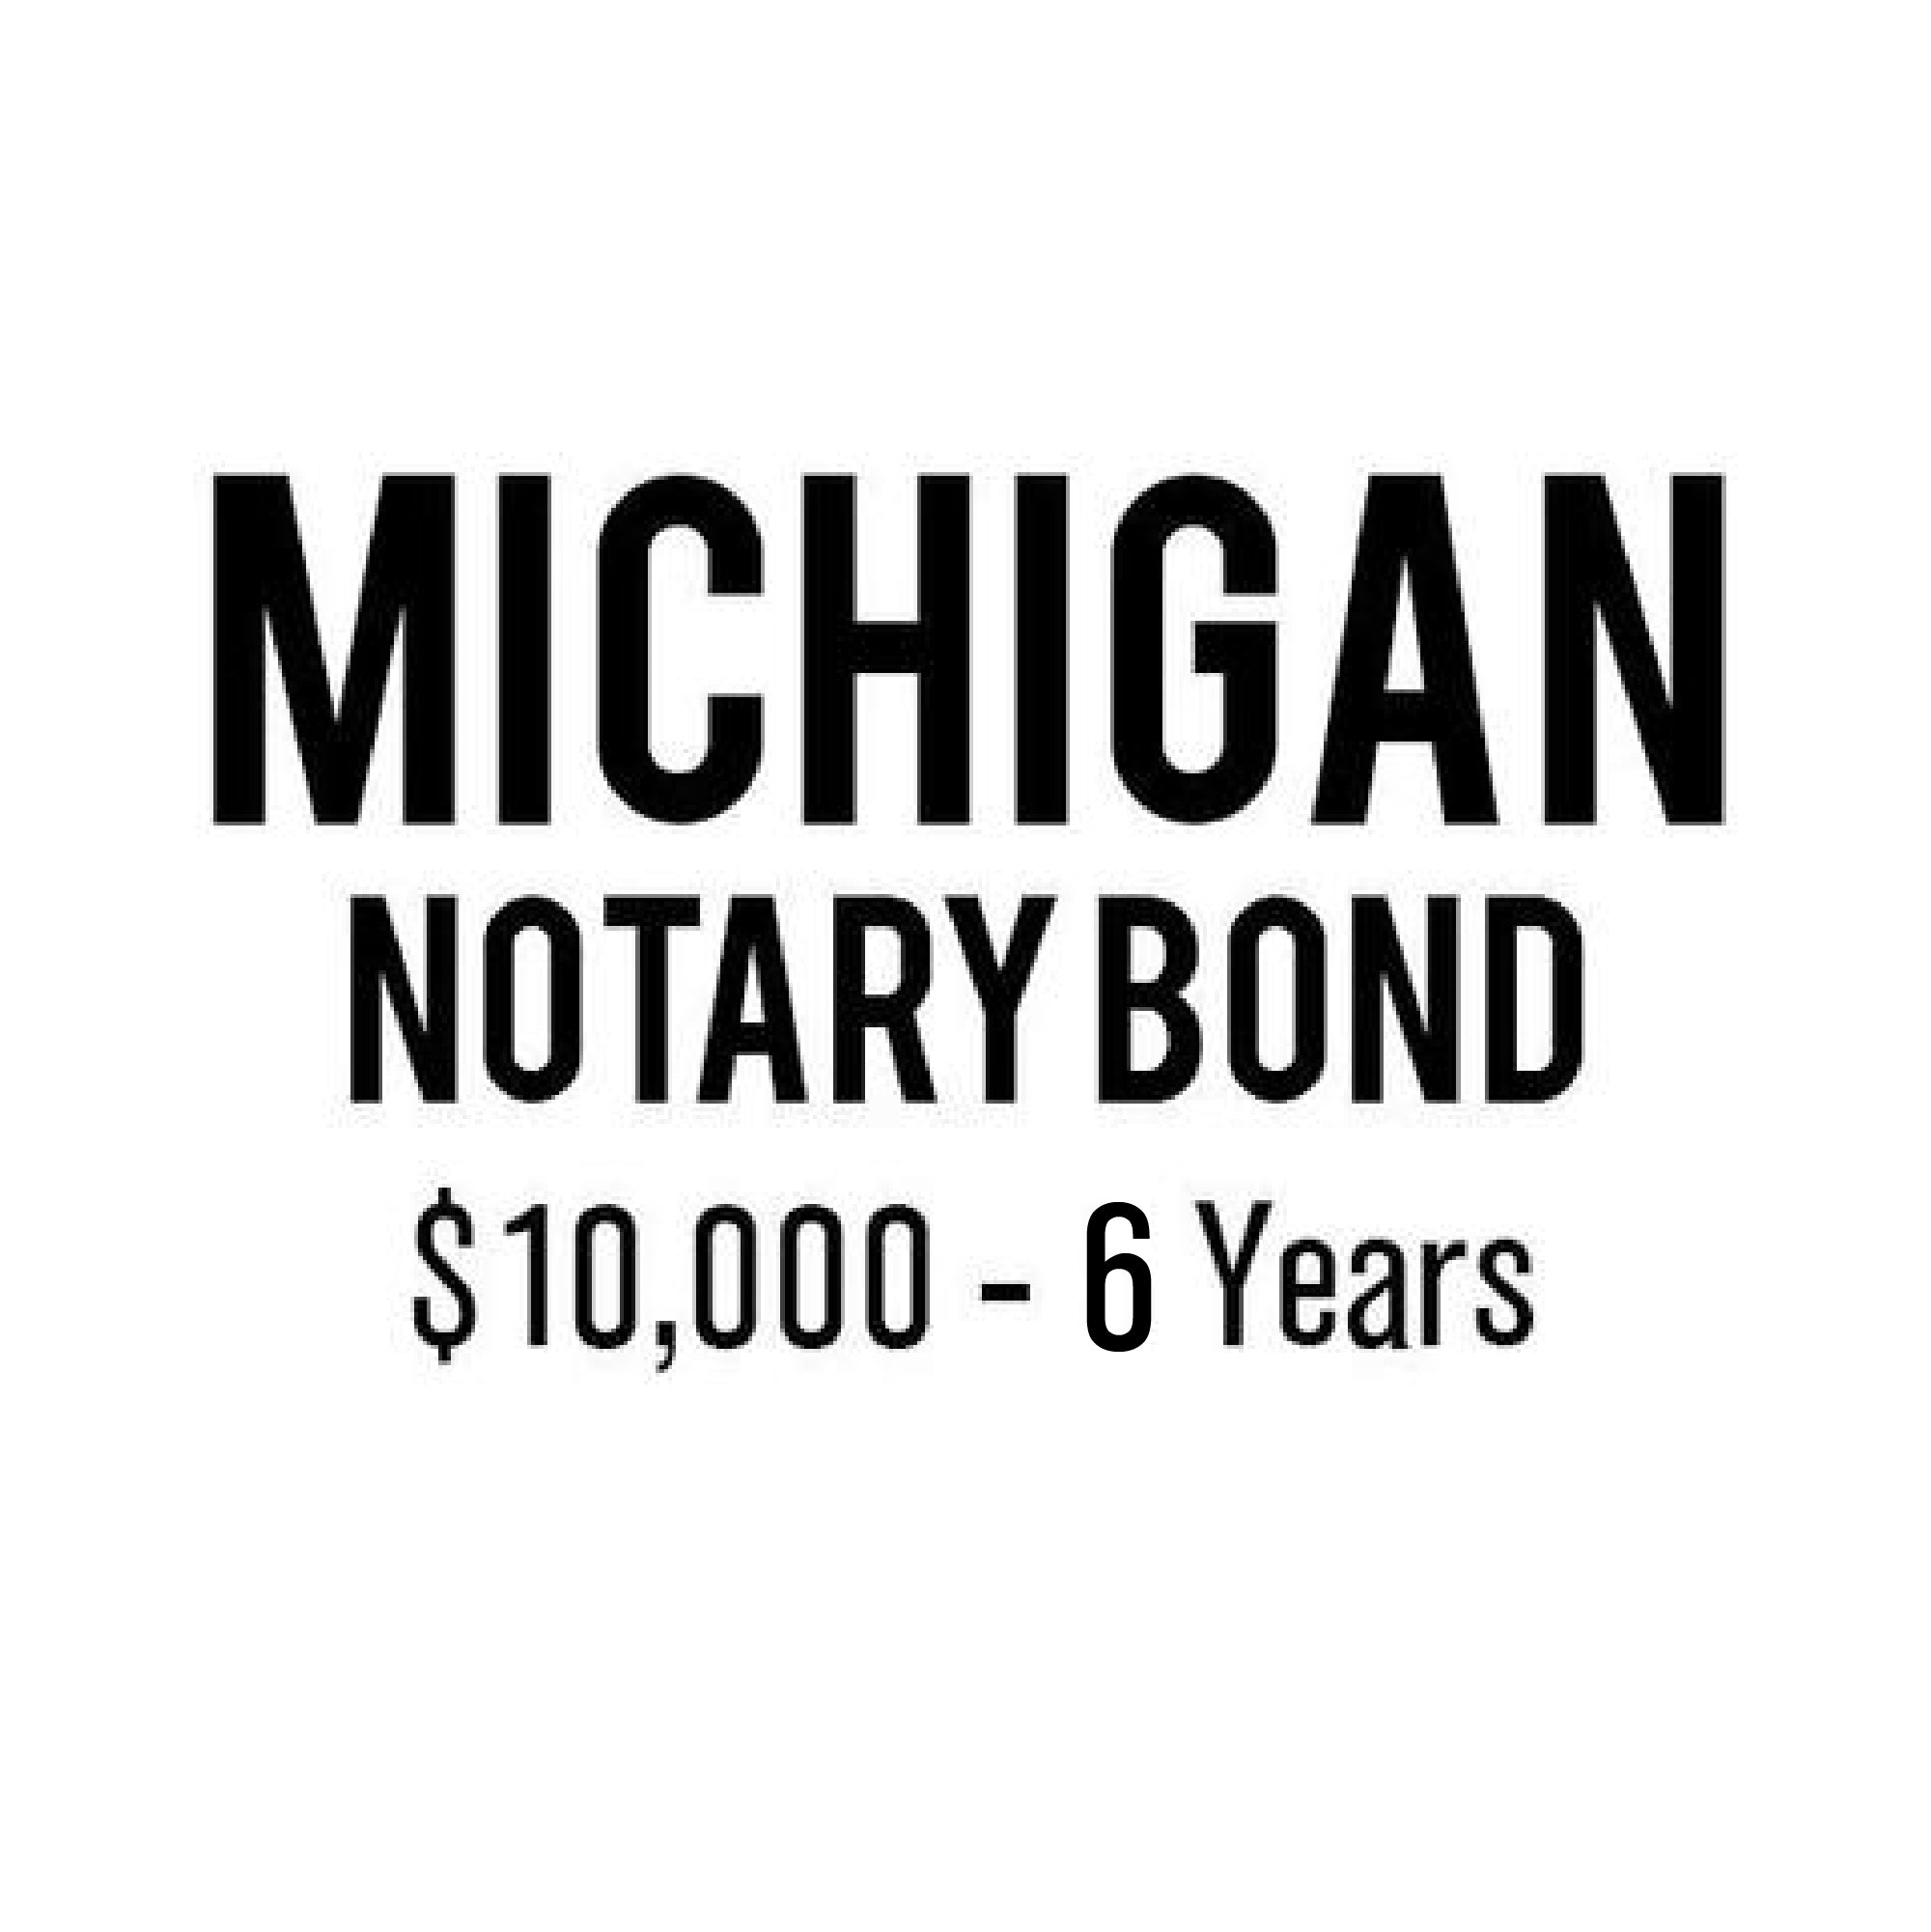 Michigan Notary Bond ($10,000 - 6 Years)